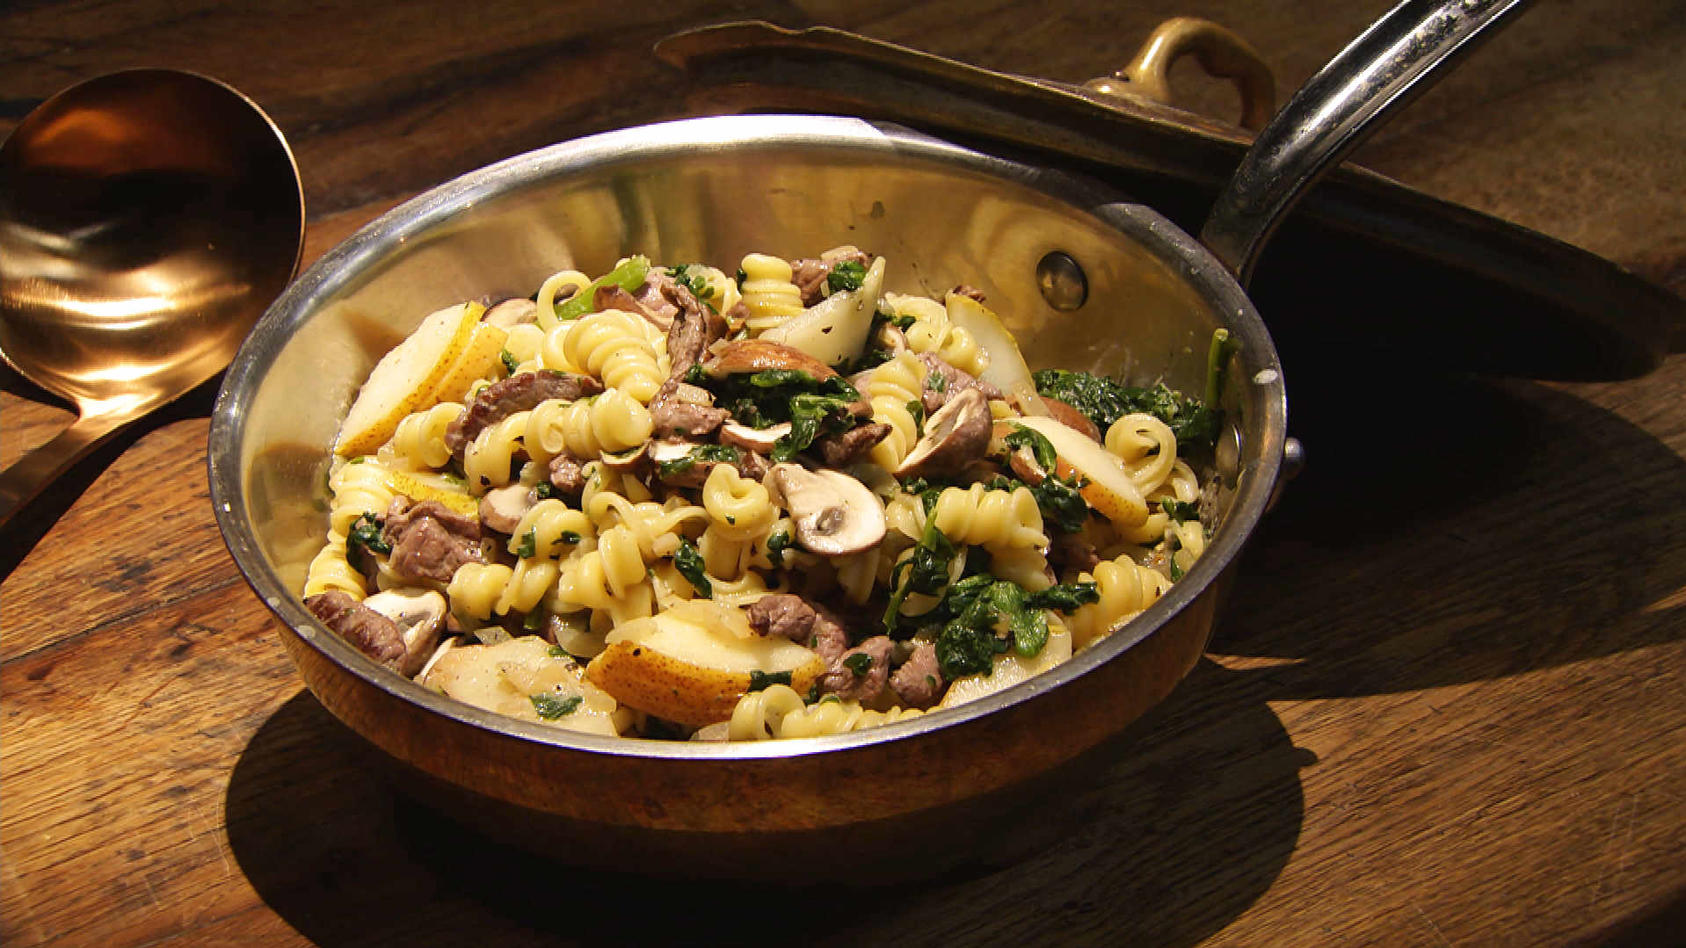 Rindergeschnetzeltes mit Spinat, Pilzen und Pasta: Hauptgericht von Ronny Loll